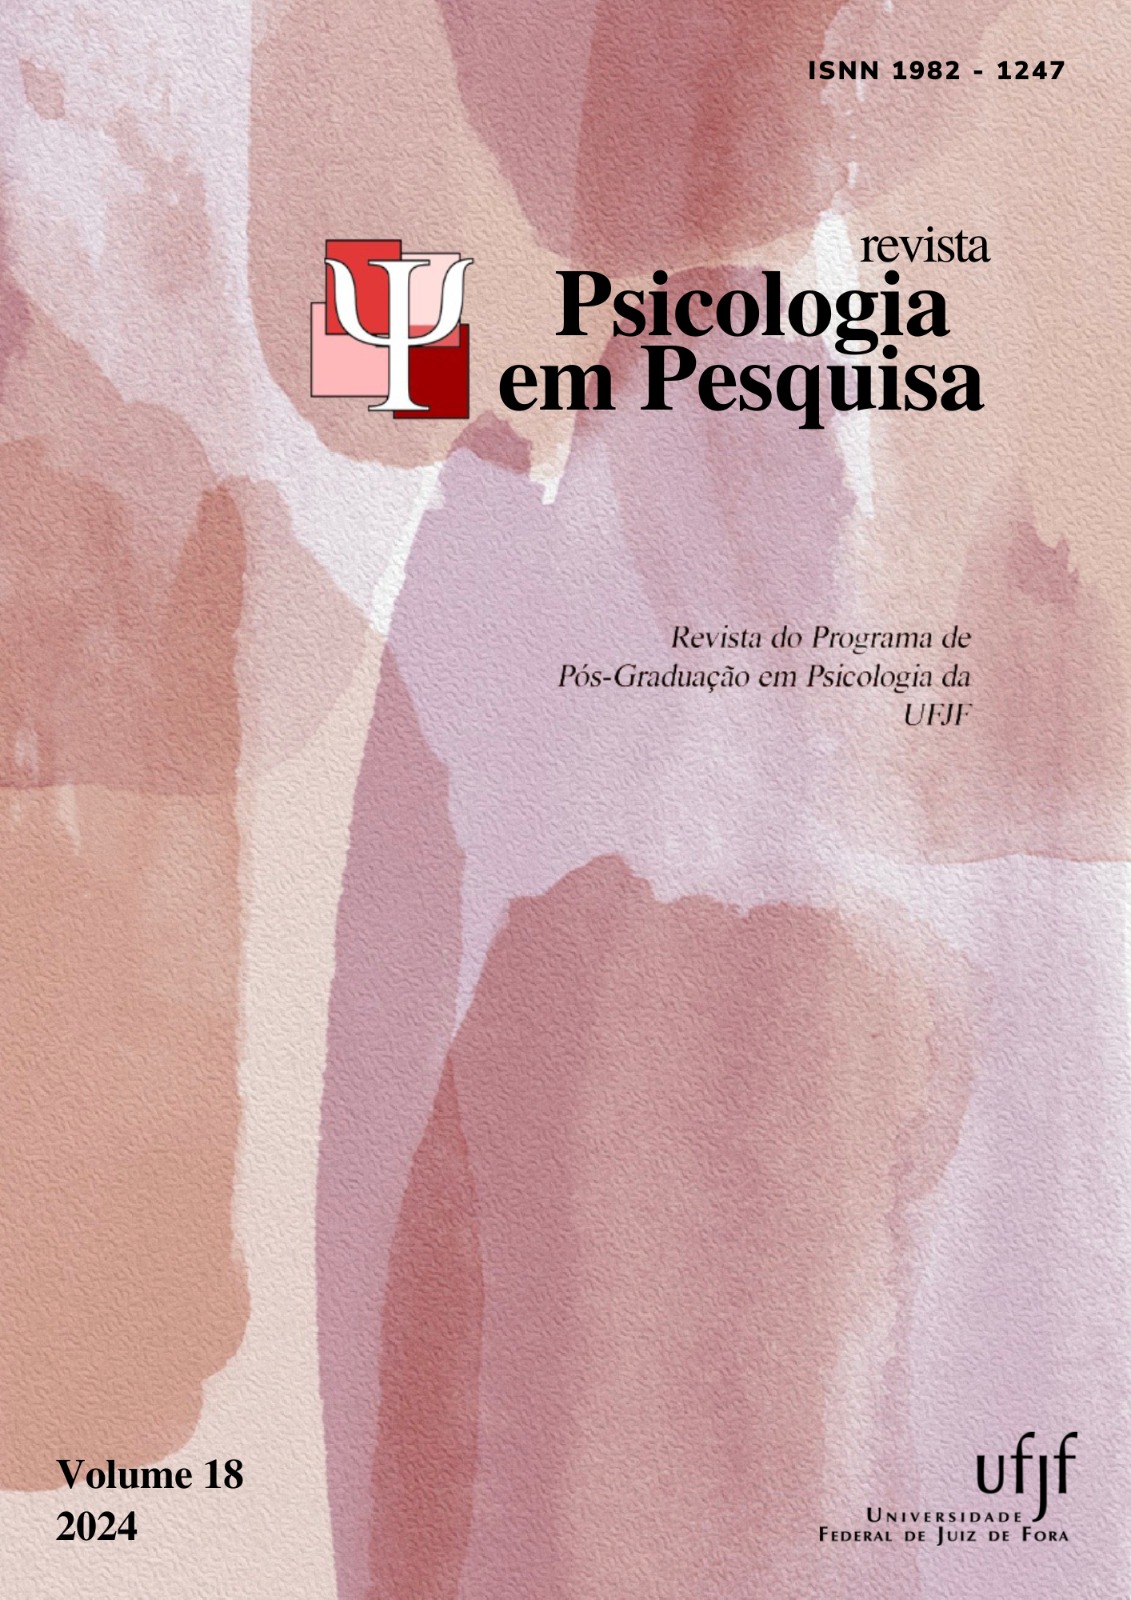 					Visualizar v. 18 n. 1 (2024): Revista Psicologia em Pesquisa
				